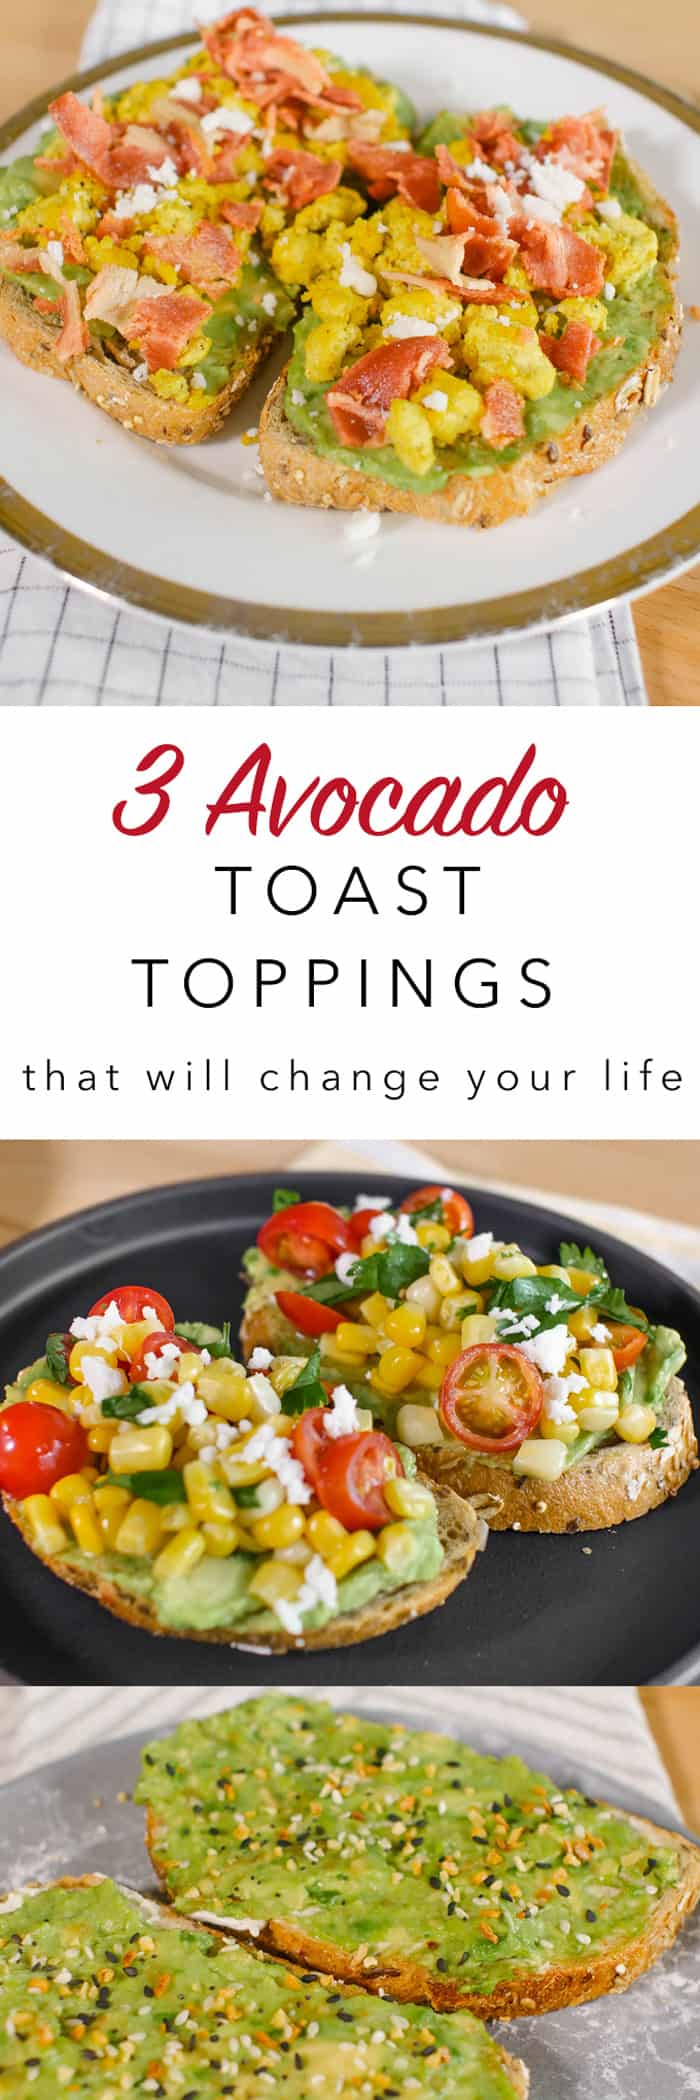 3 Avocado Toast Toppings For Any Craving — Avocado Toast Recipes